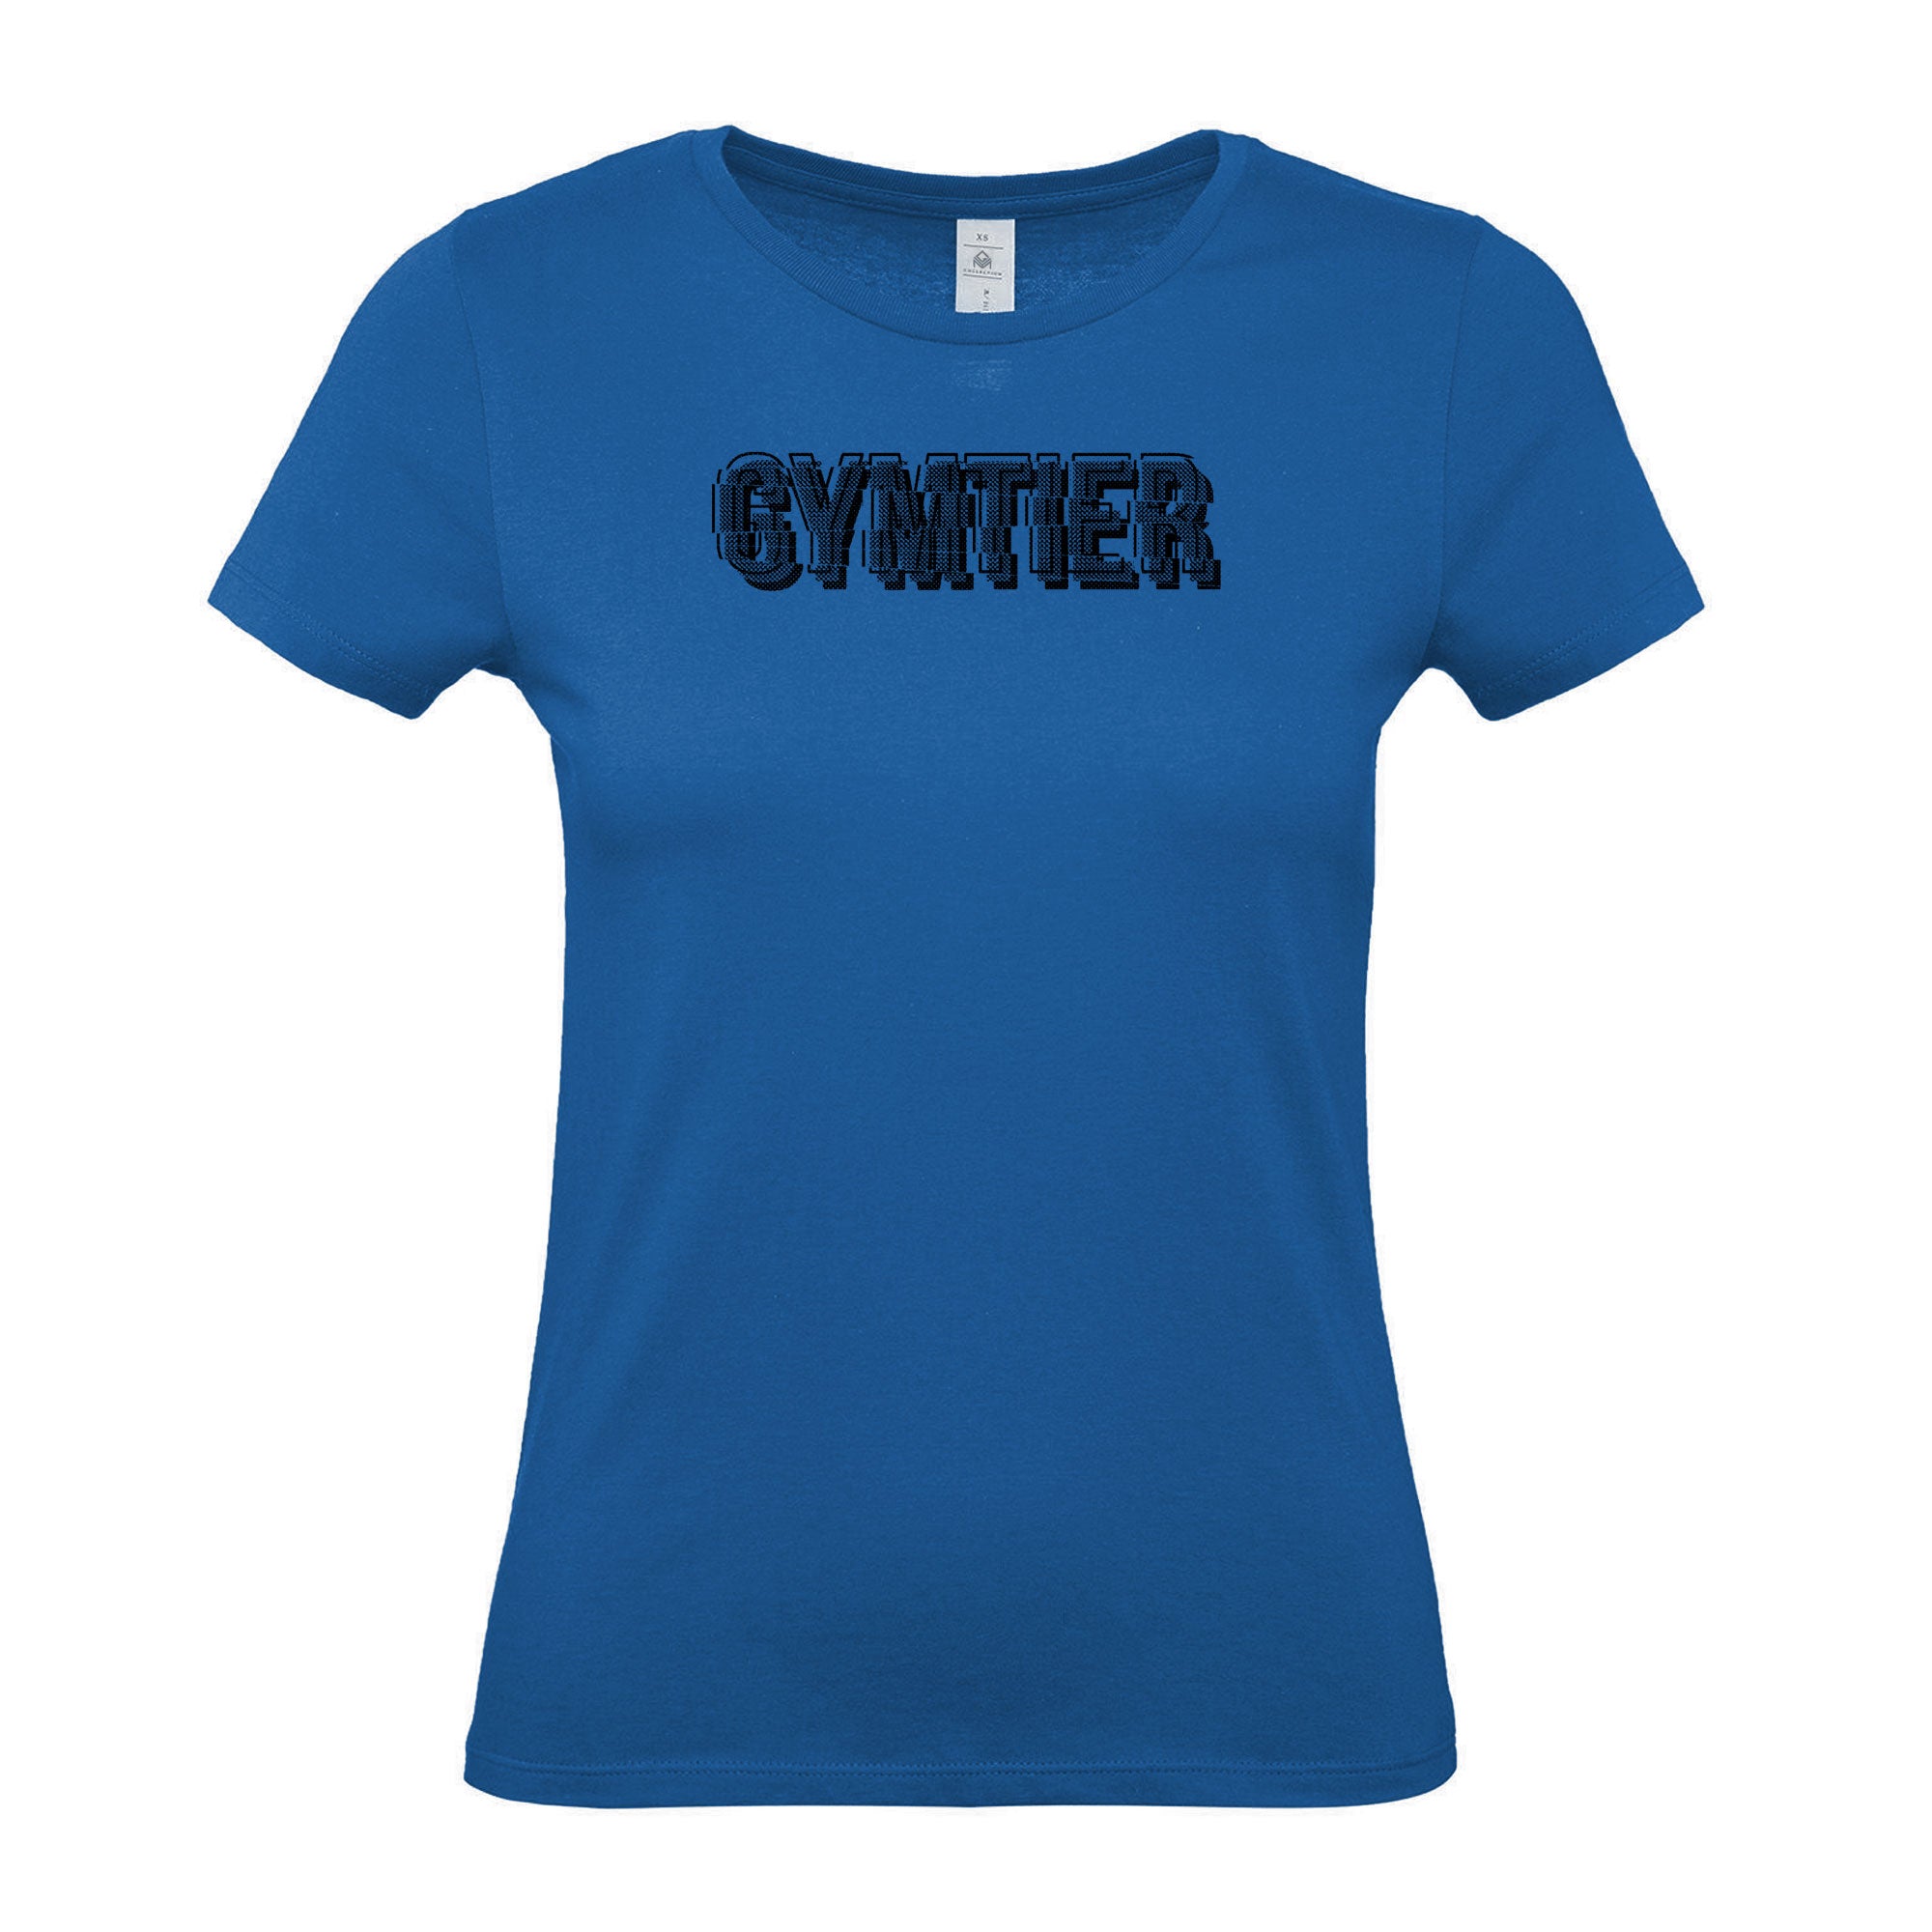 GYMTIER Shard - Women's Gym T-Shirt